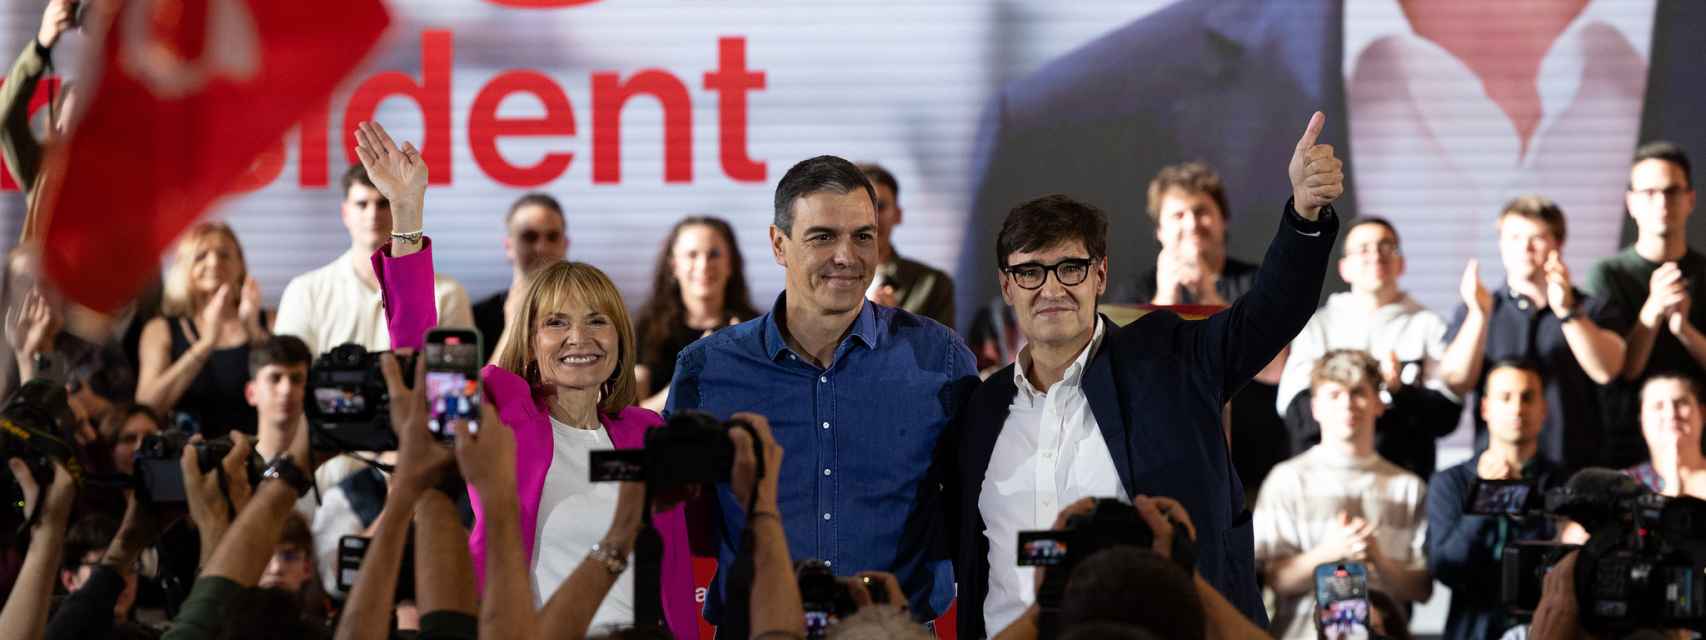 Actualidad política, en directo | Sánchez, Feijóo y Abascal arropan a sus candidatos hoy en la campaña de las elecciones catalanas